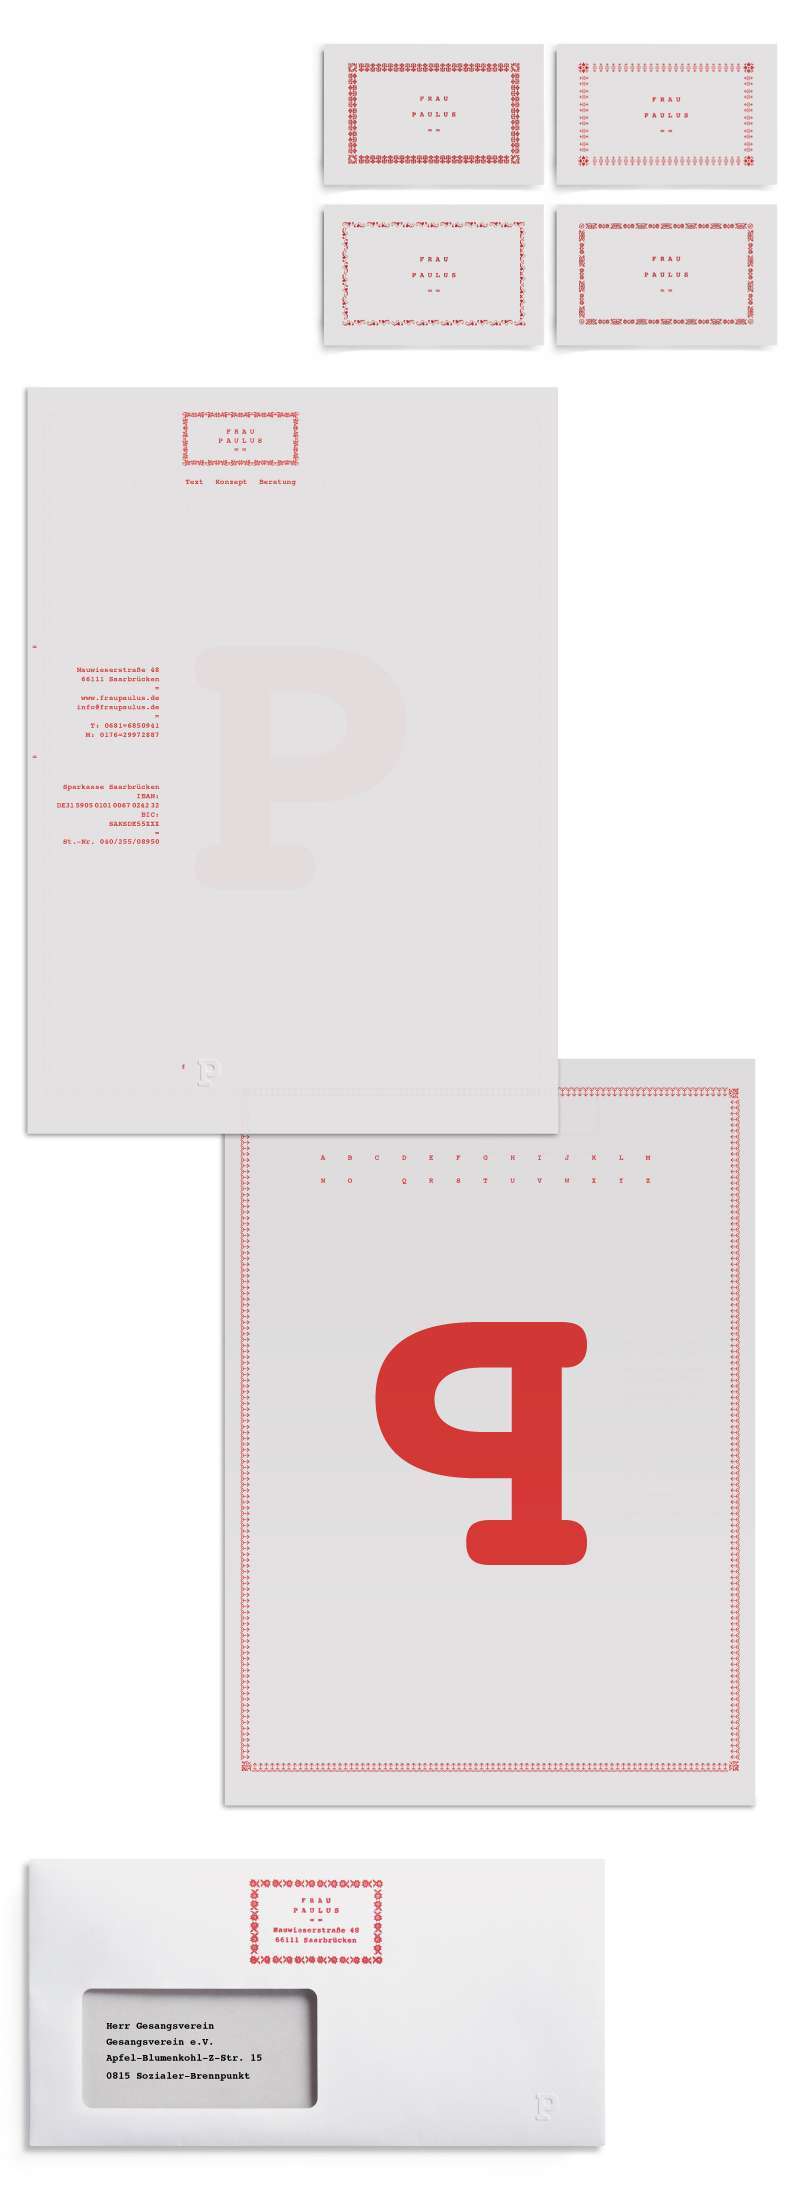 frau paulus text konzept corporate grafik design typografie nauwieser viertel courier bold